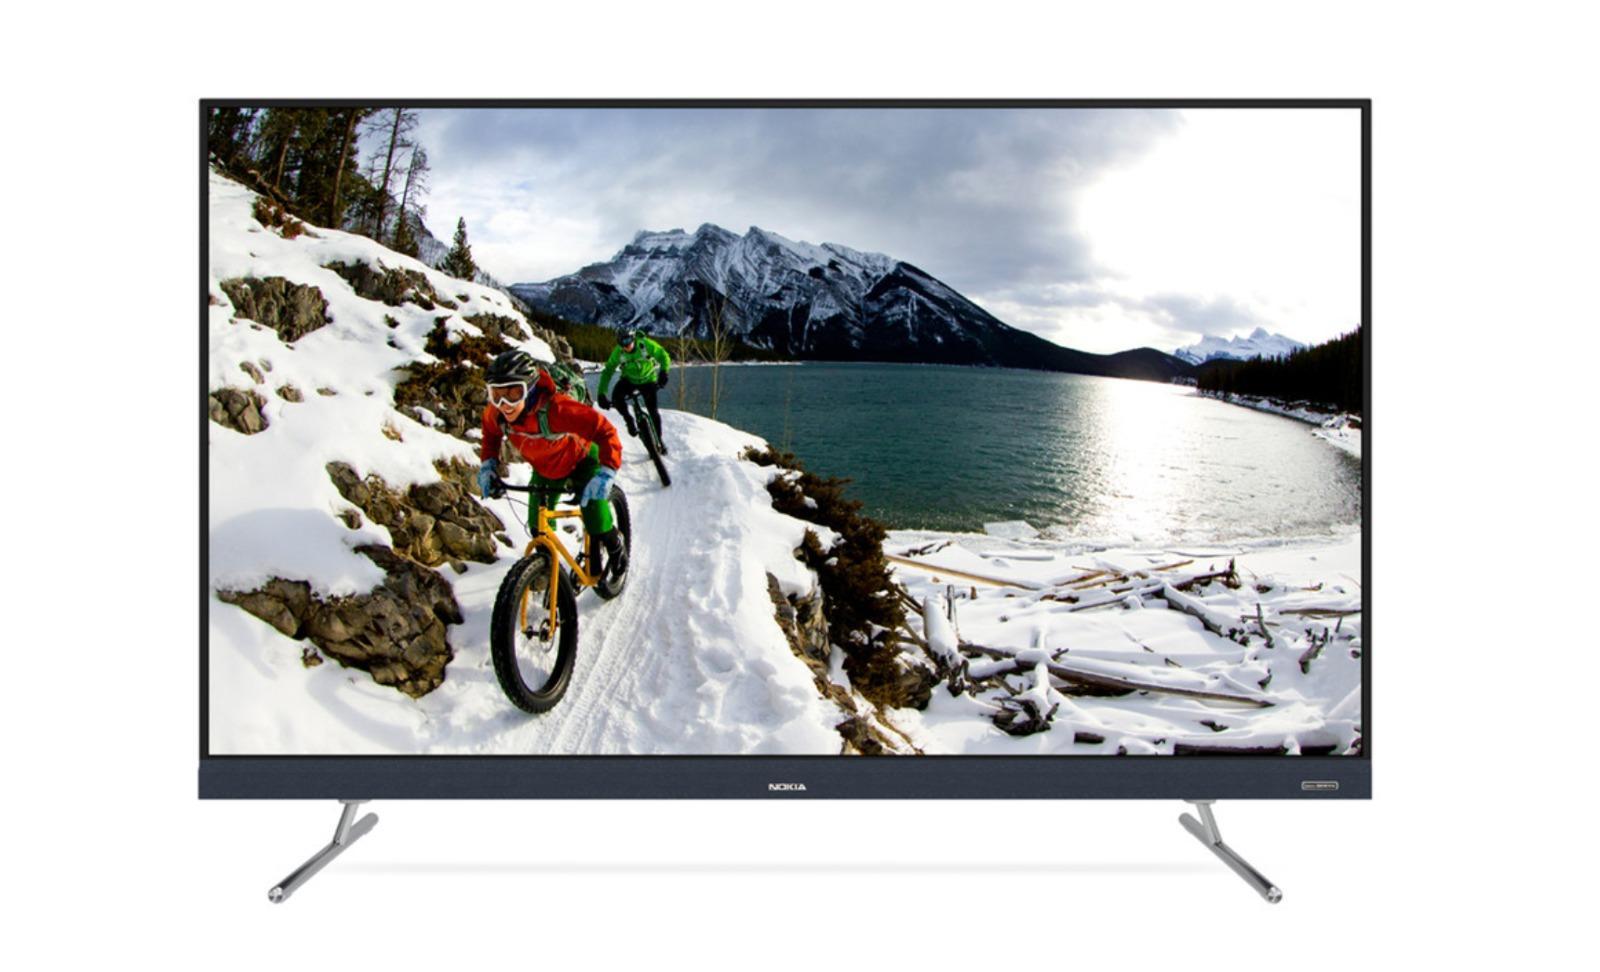 Nokia Smart TV 32 इंच स्मार्ट टीवी को कर दिया गया है लाँच, जानें इसकी कीमत